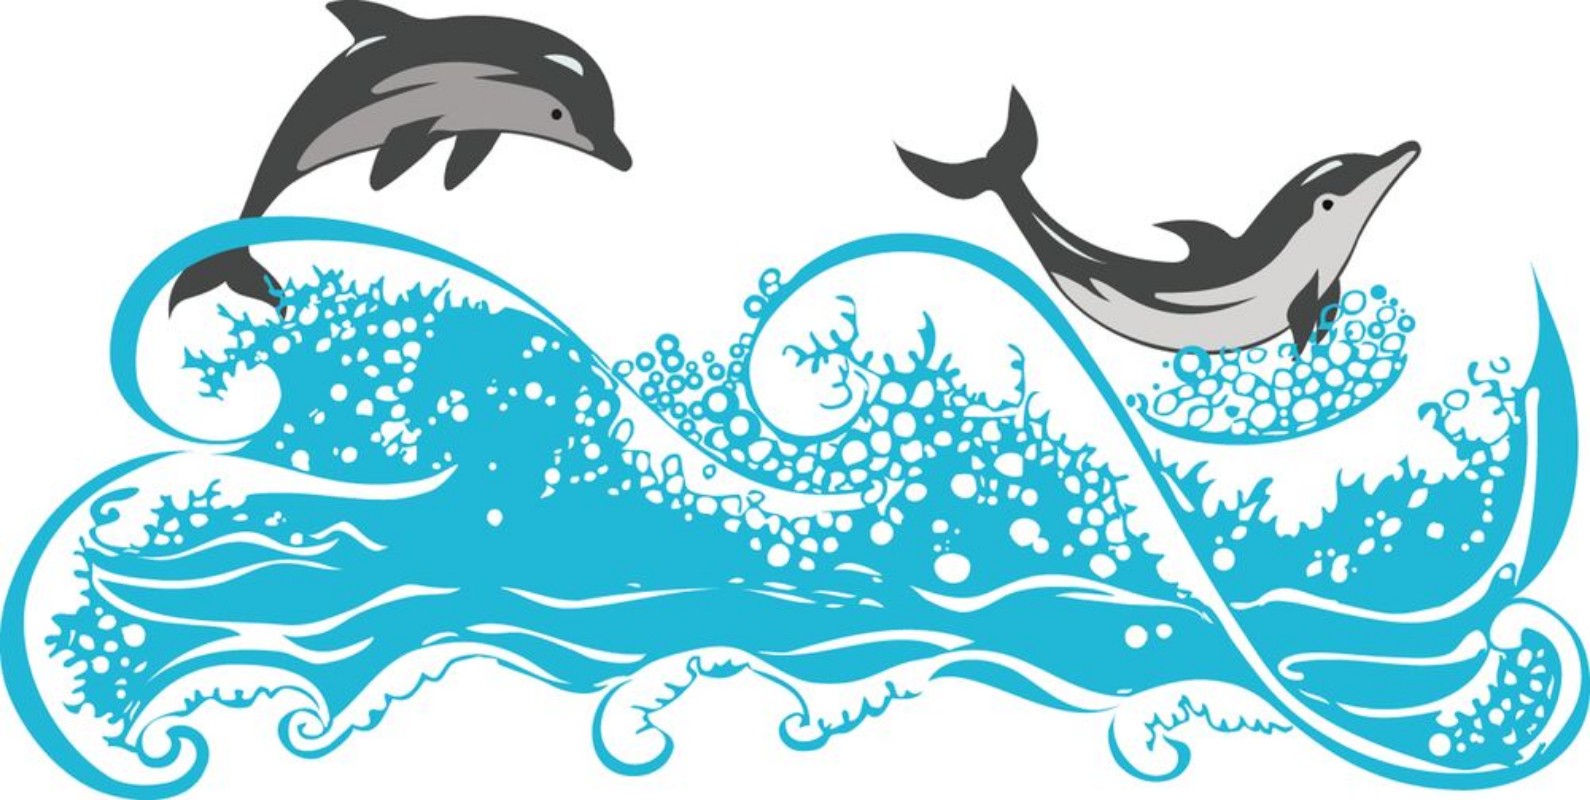 Afbeeldingen van Dolphins jumping in waves